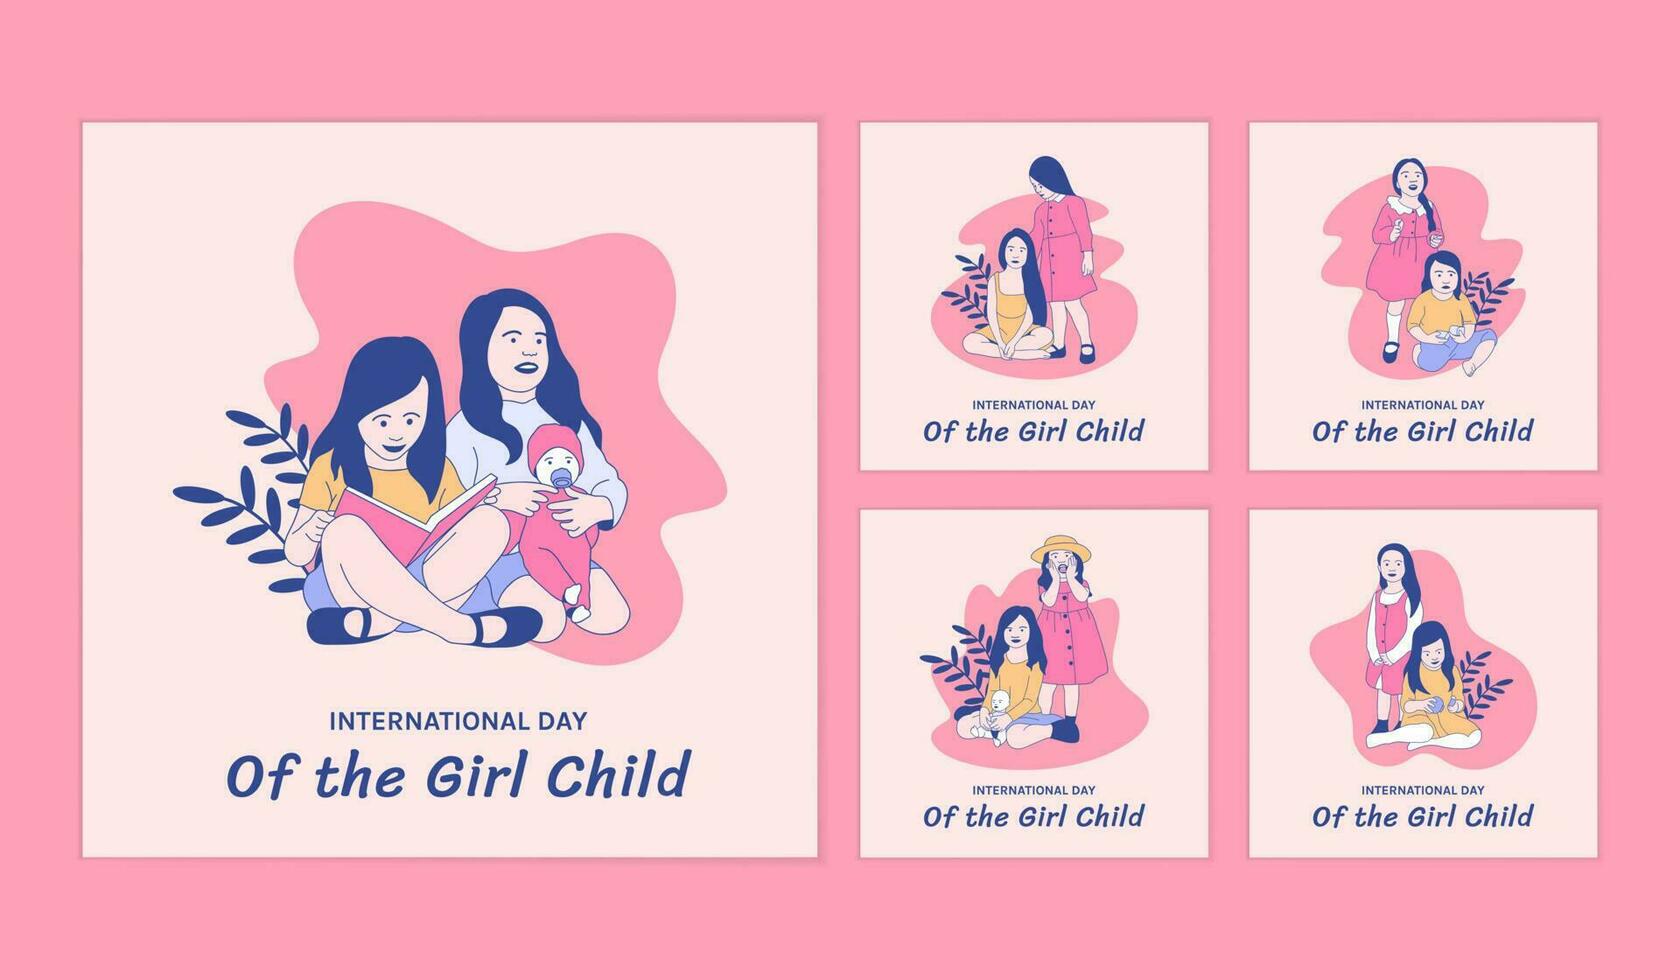 ilustrações de duas lindas garotas para o dia internacional da coleção de postagens de mídia social da menina vetor